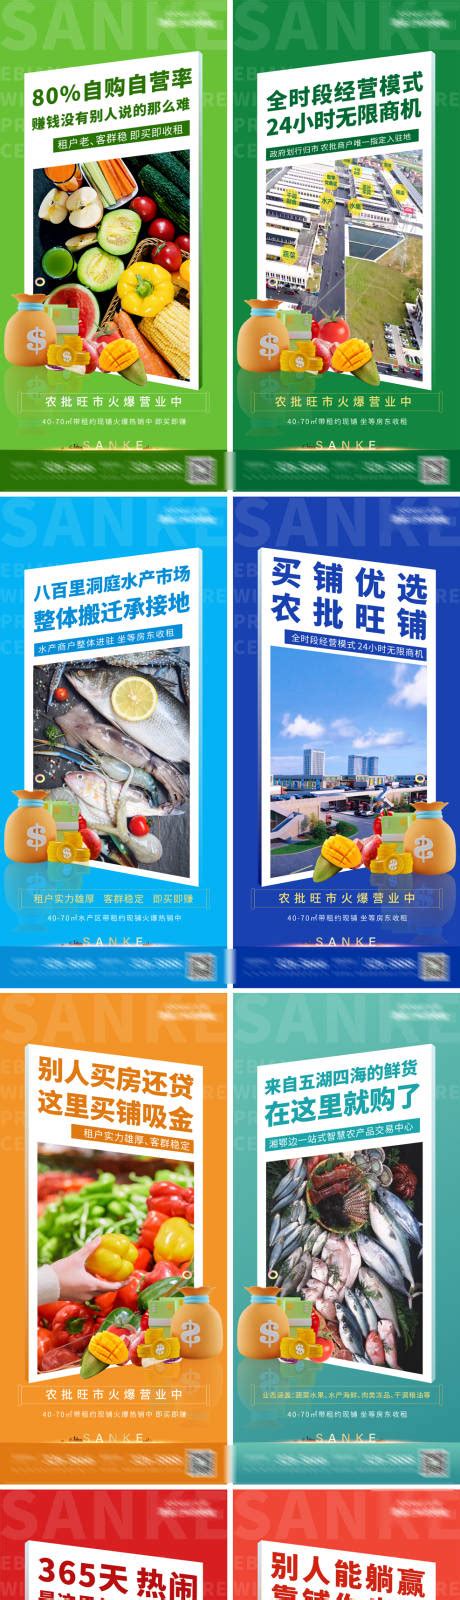 菜市场招商海报PSD广告设计素材海报模板免费下载-享设计